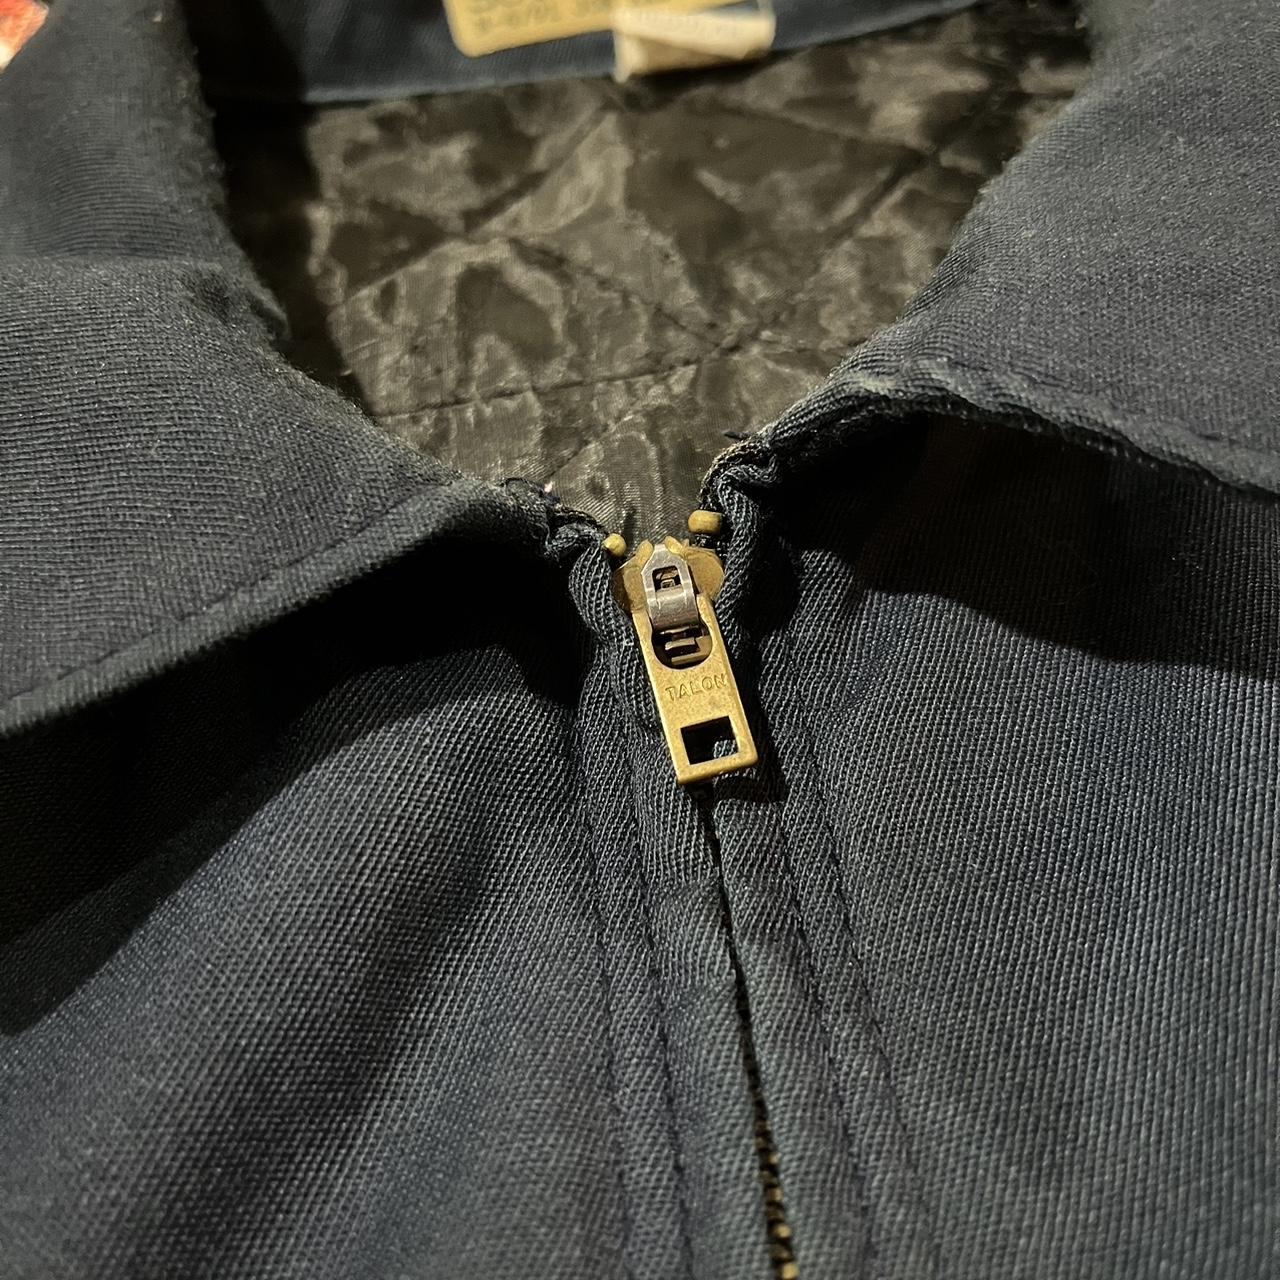 Vintage Chain Stitch Work Jacket, size XXL, made in... - Depop